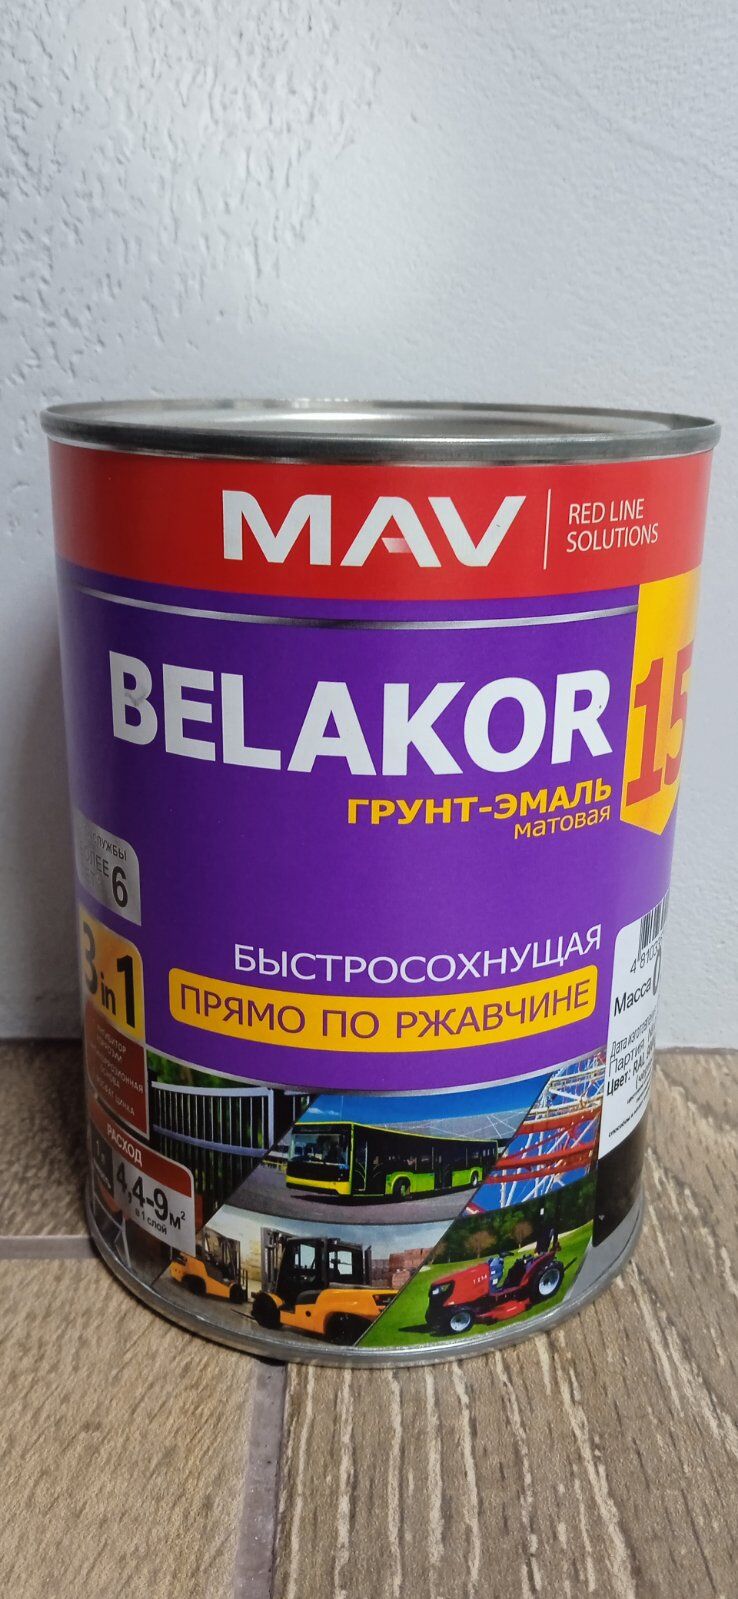 Грунт Эмаль BELAKOR 15 прямо по ржавчине 3 в 1 быстросохнущая, 1,0 кг. , RAL 7024 графитовый(матовый), пр-во Беларусь